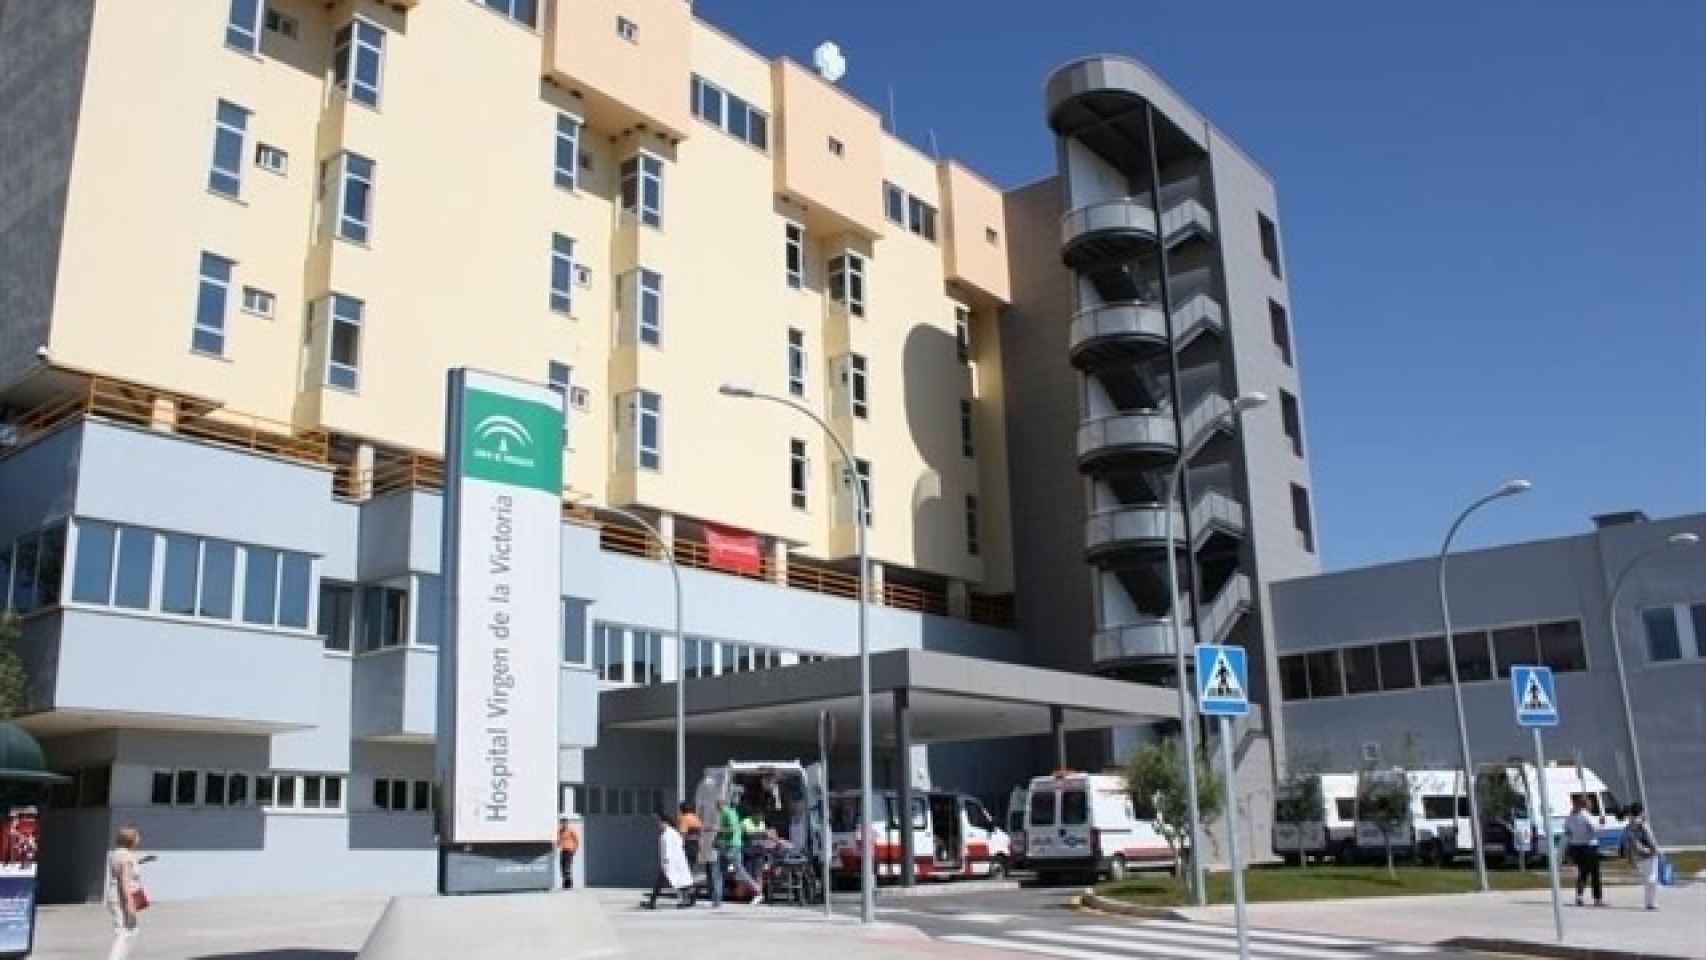 Hospital Universitario Virgen de la Victoria de Málaga, donde ocurrieron los hechos.